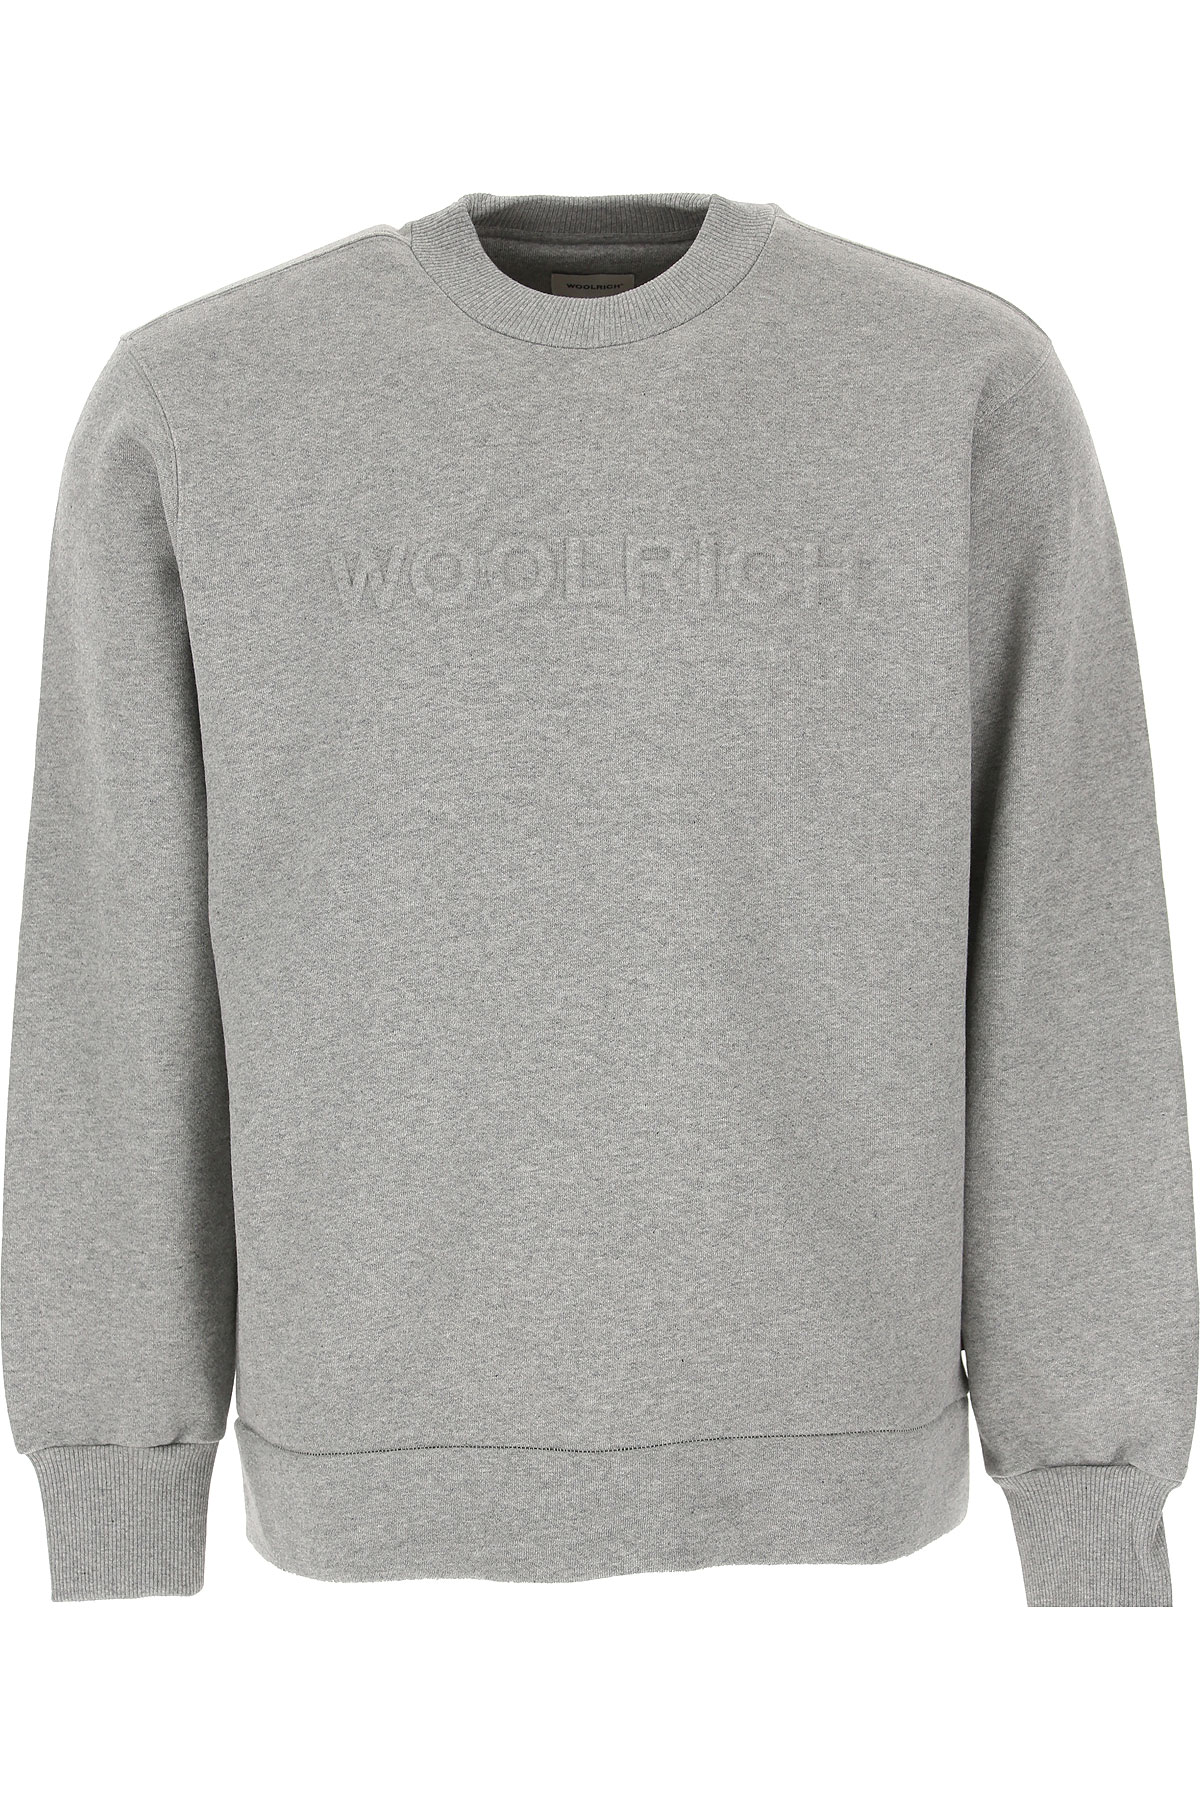 Woolrich Sweatshirt für Herren, Kapuzenpulli, Hoodie, Sweats Günstig im Sale, Hellgrau, Baumwolle, 2017, L M S XL